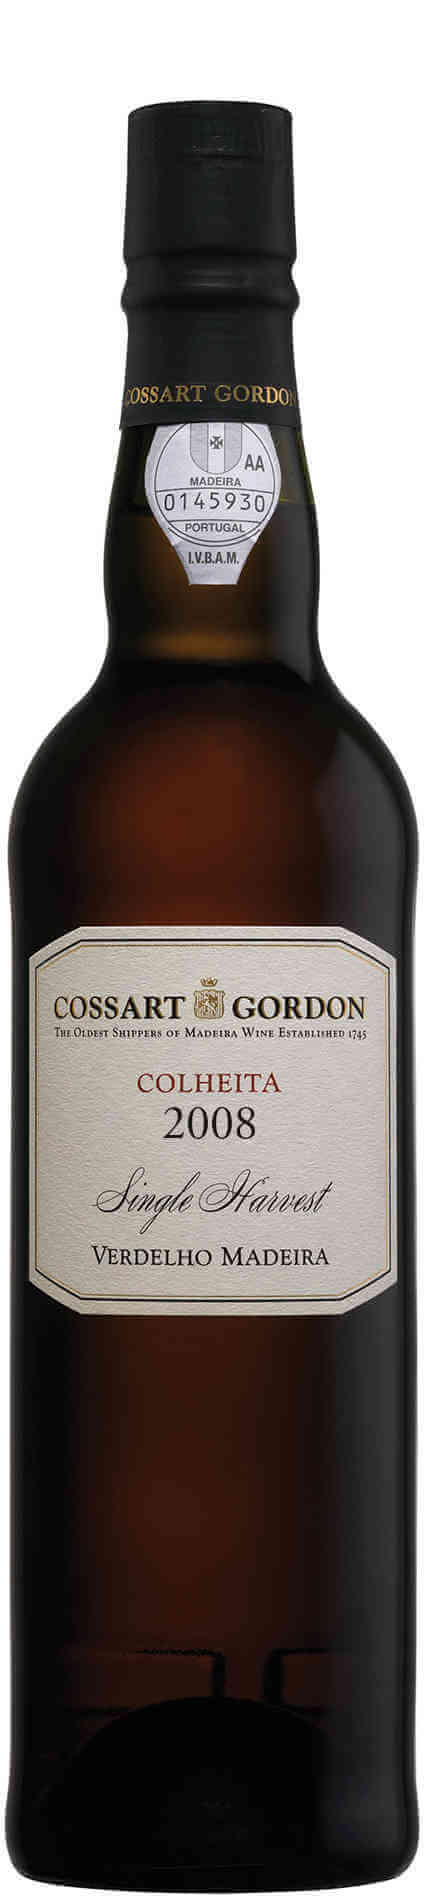 Cossart-Gordon-Verdelho-Colheita-2008